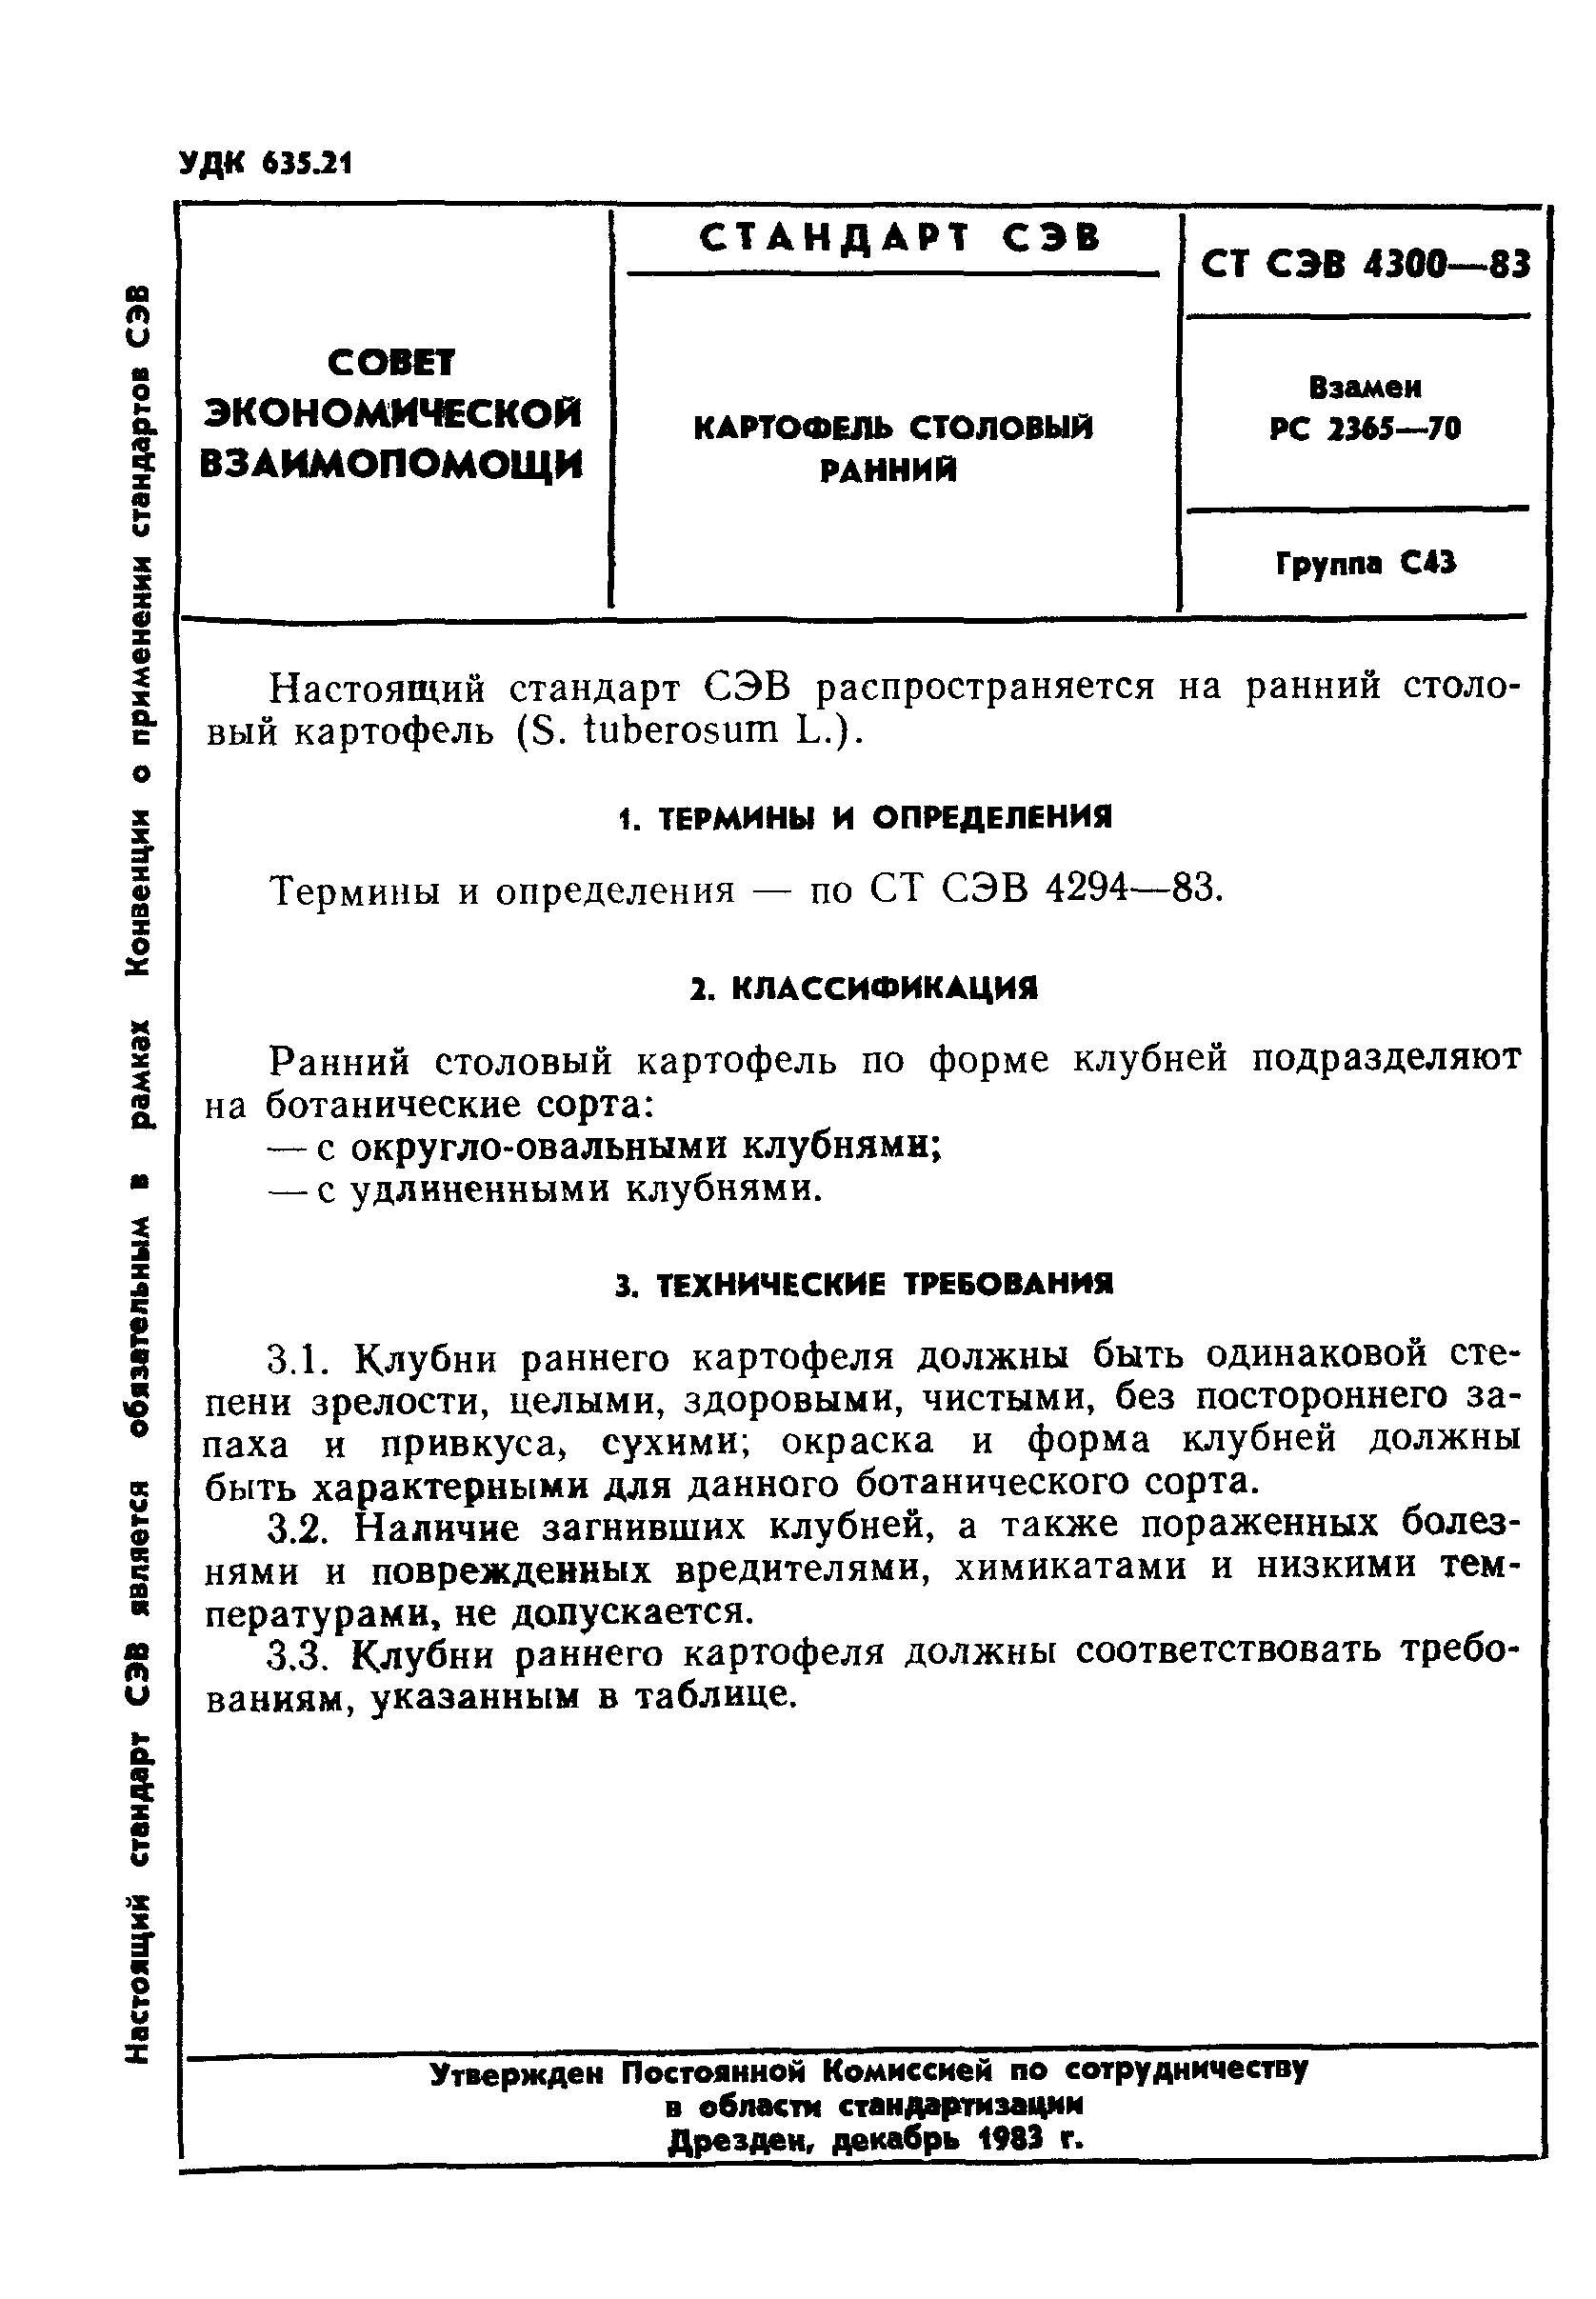 СТ СЭВ 4300-83